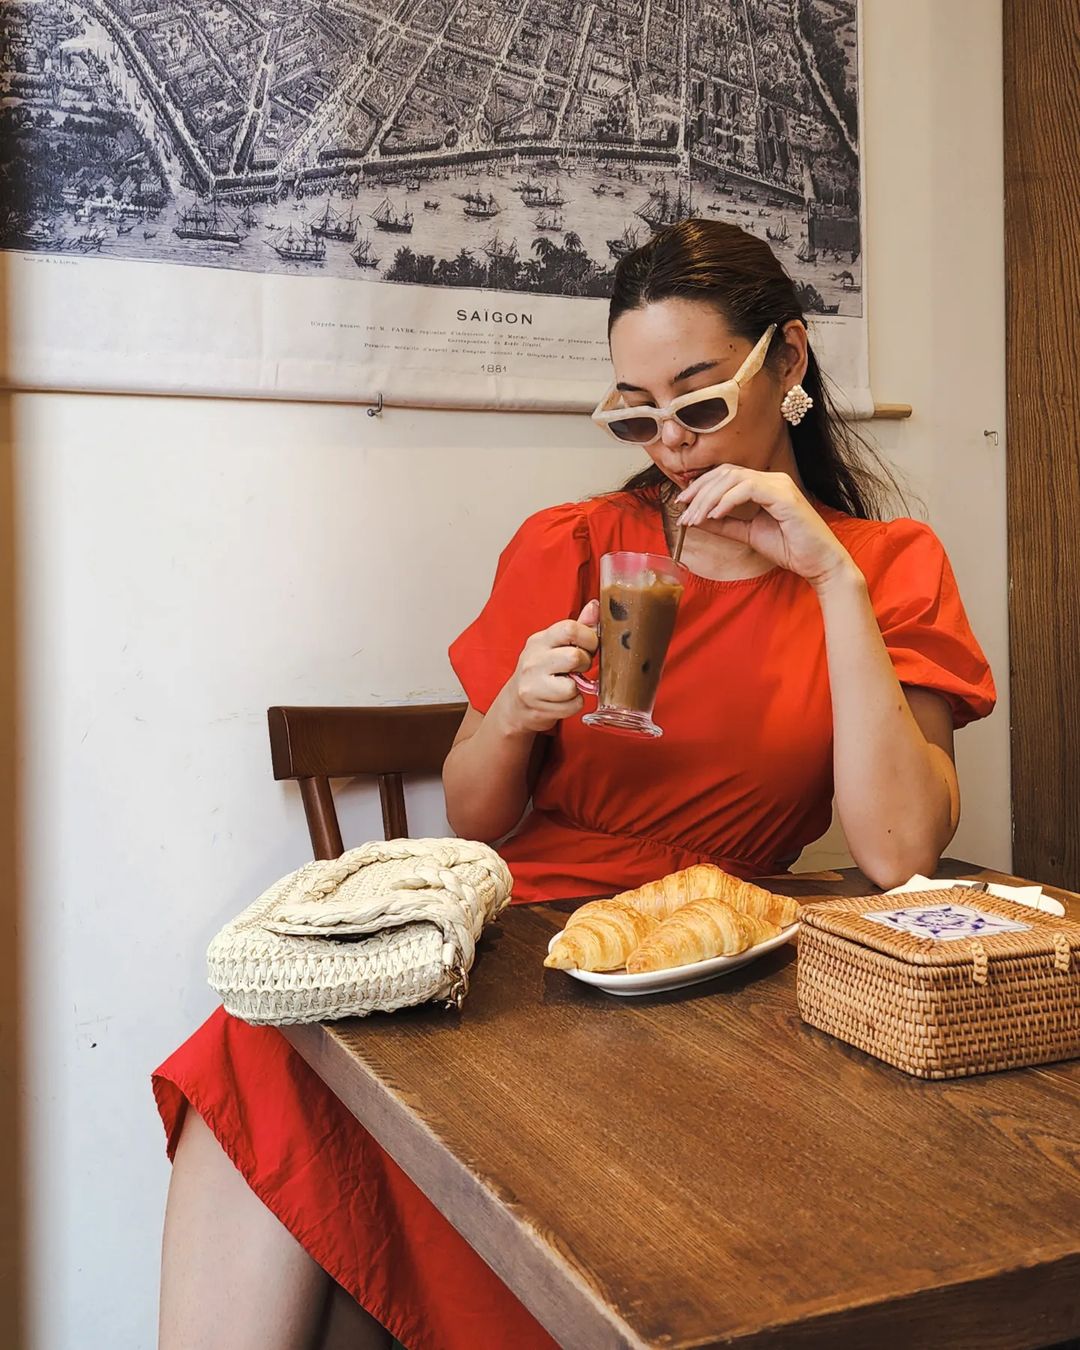 Catriona Gray nói Hoa hậu nói khi đến TPHCM thực hiện một tour về ẩm thực rất mê cà phê Việt Nam. Trong mỗi ngày lưu lại, phải uống ít nhất 2 ly, vì quá tuyệt vời.